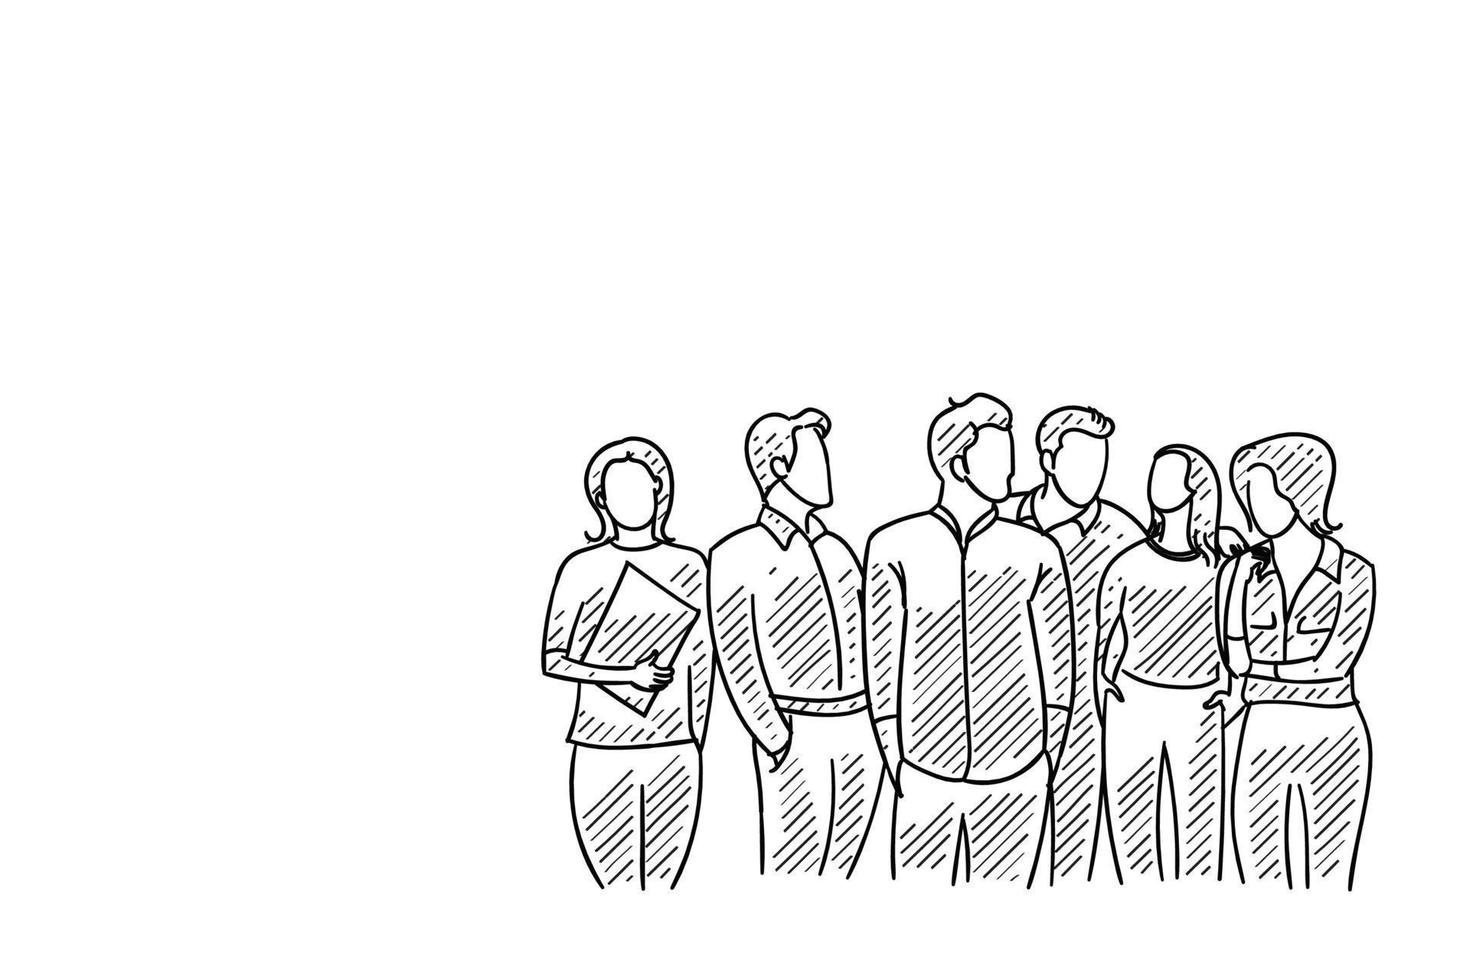 schizzo di uomini d'affari maschi e femmine della società di avvio in piedi insieme. disegno dell'illustrazione del personaggio disegnato a mano. vettore